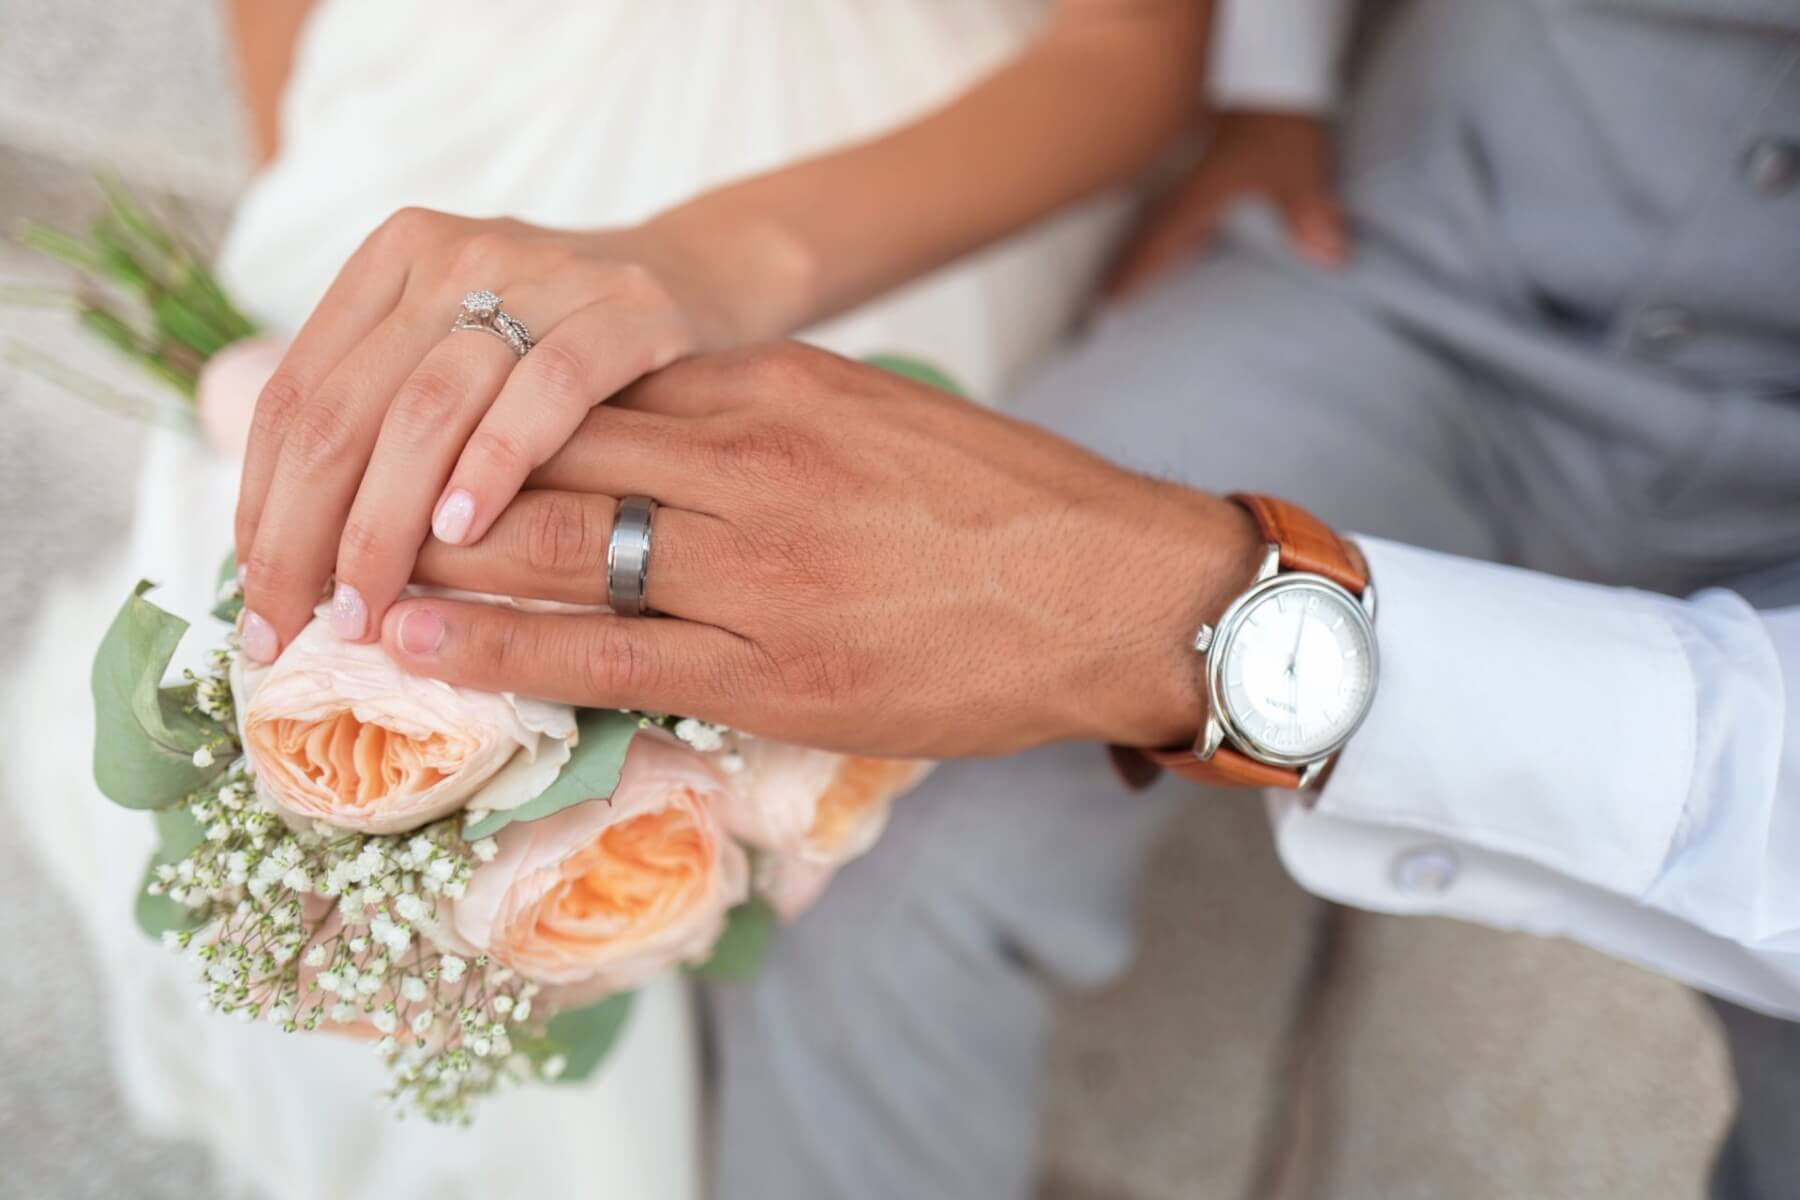 バツイチ 子持ちにおすすめの結婚相談所4選 再婚の確率が一番高い結婚相談所とは Promarry 1年以内に結婚したい人のための結婚 相談所ポータルサイト